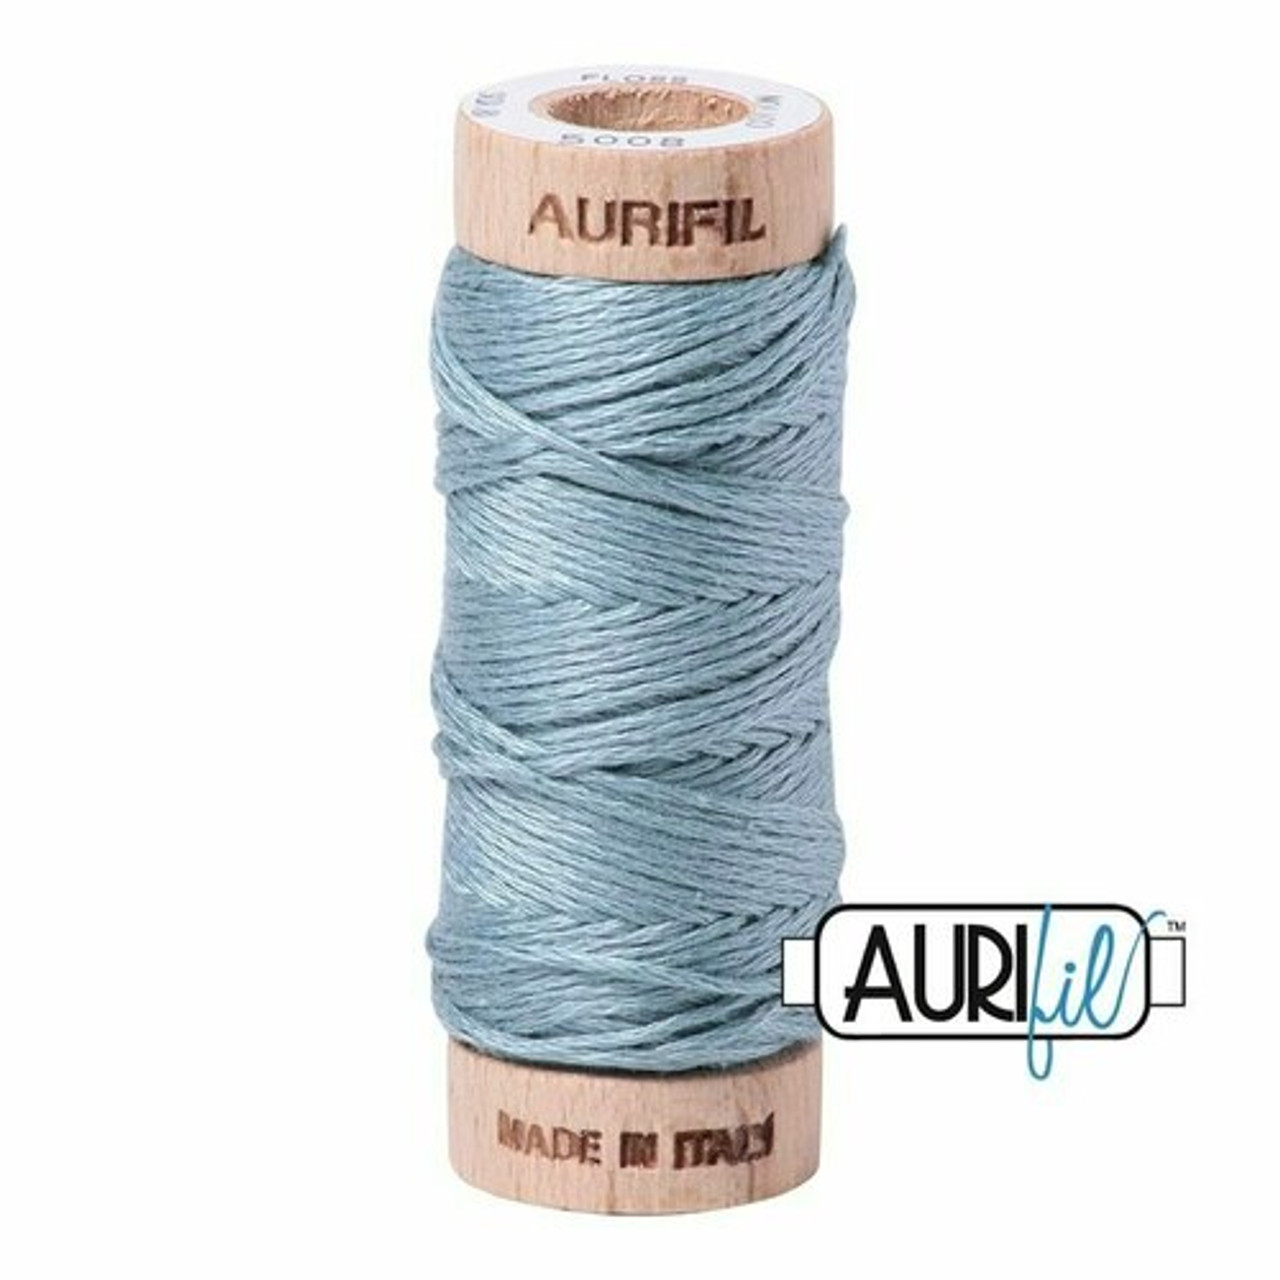 Aurifil 5008 - Sugar Paper